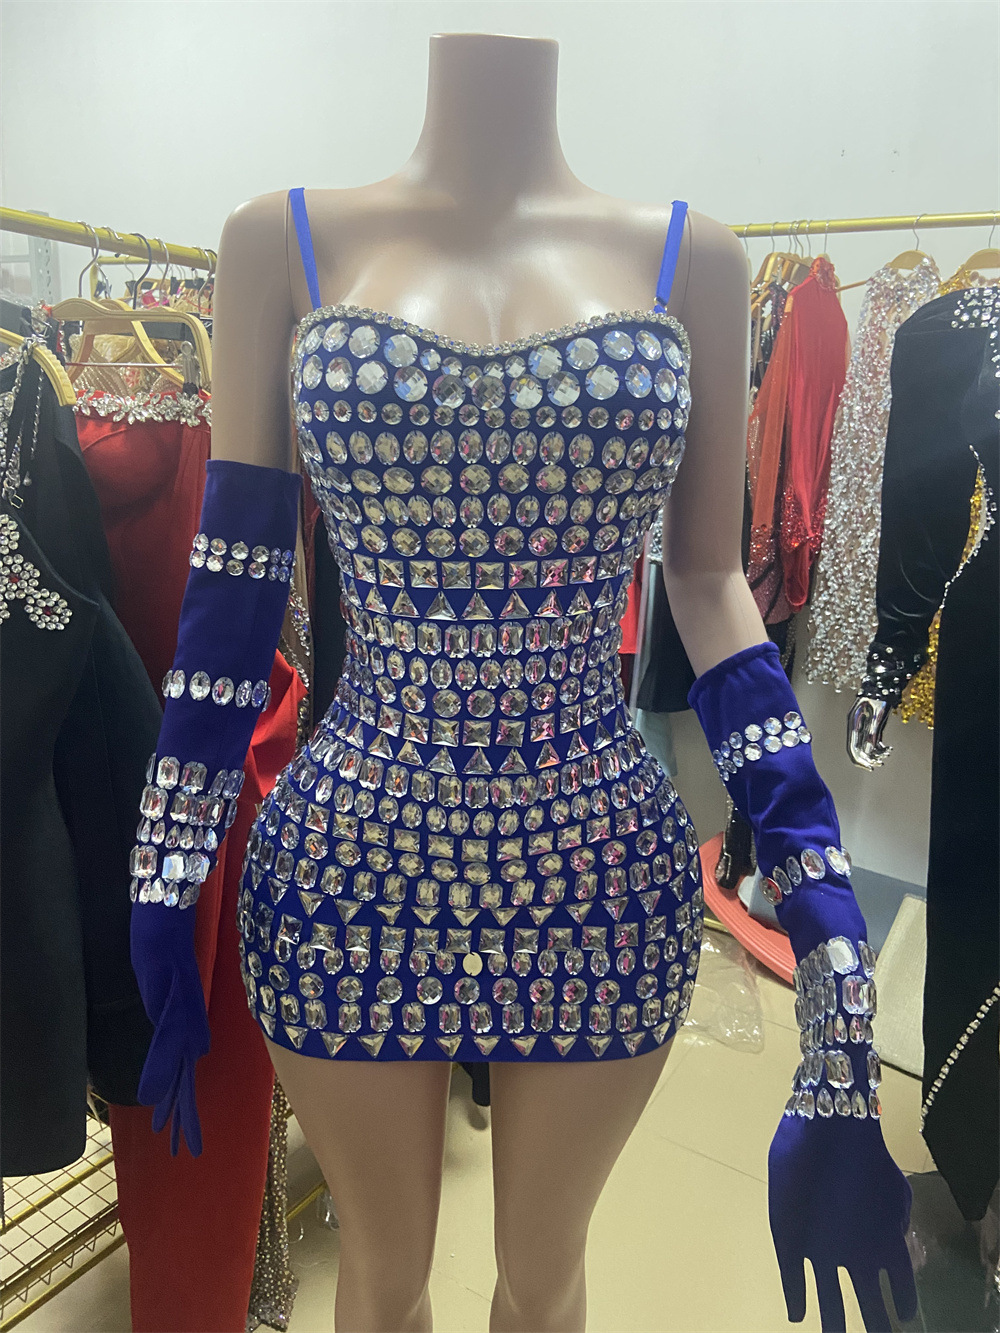 Diamond Jumpsuit Party Dresses Manufacture (8)